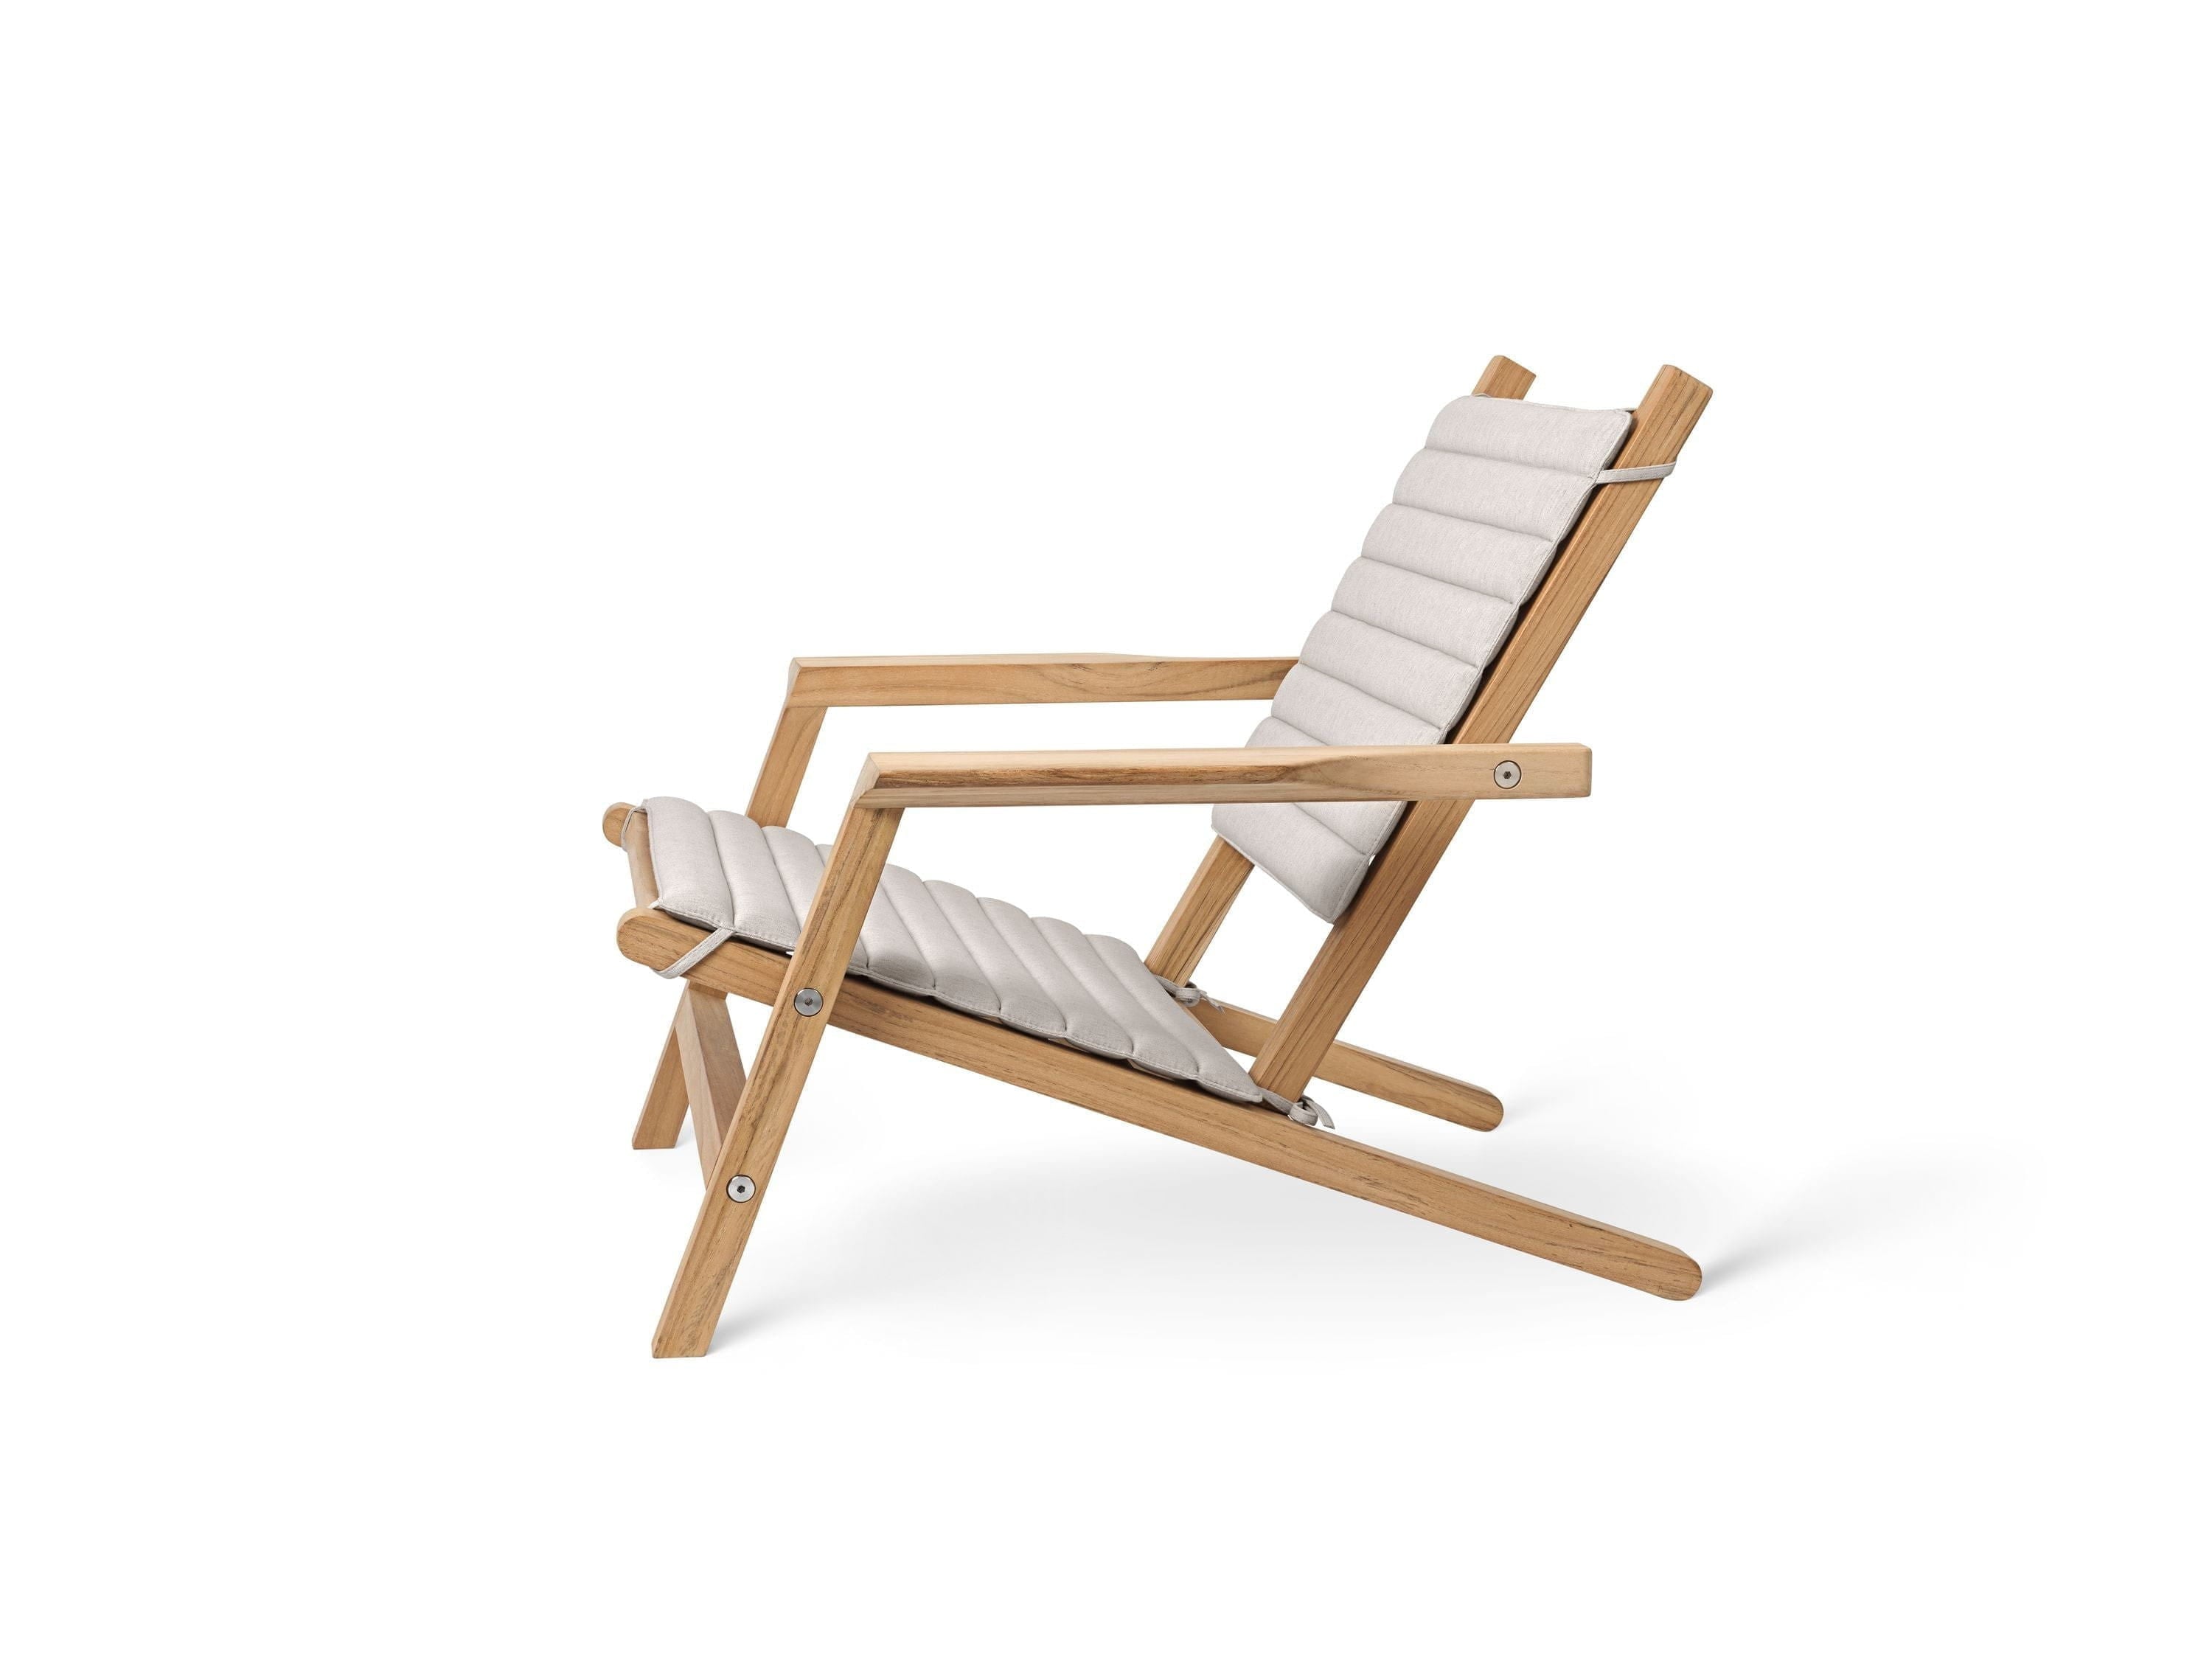 Carl Hansen Ah603 Outdoor Deck Chair